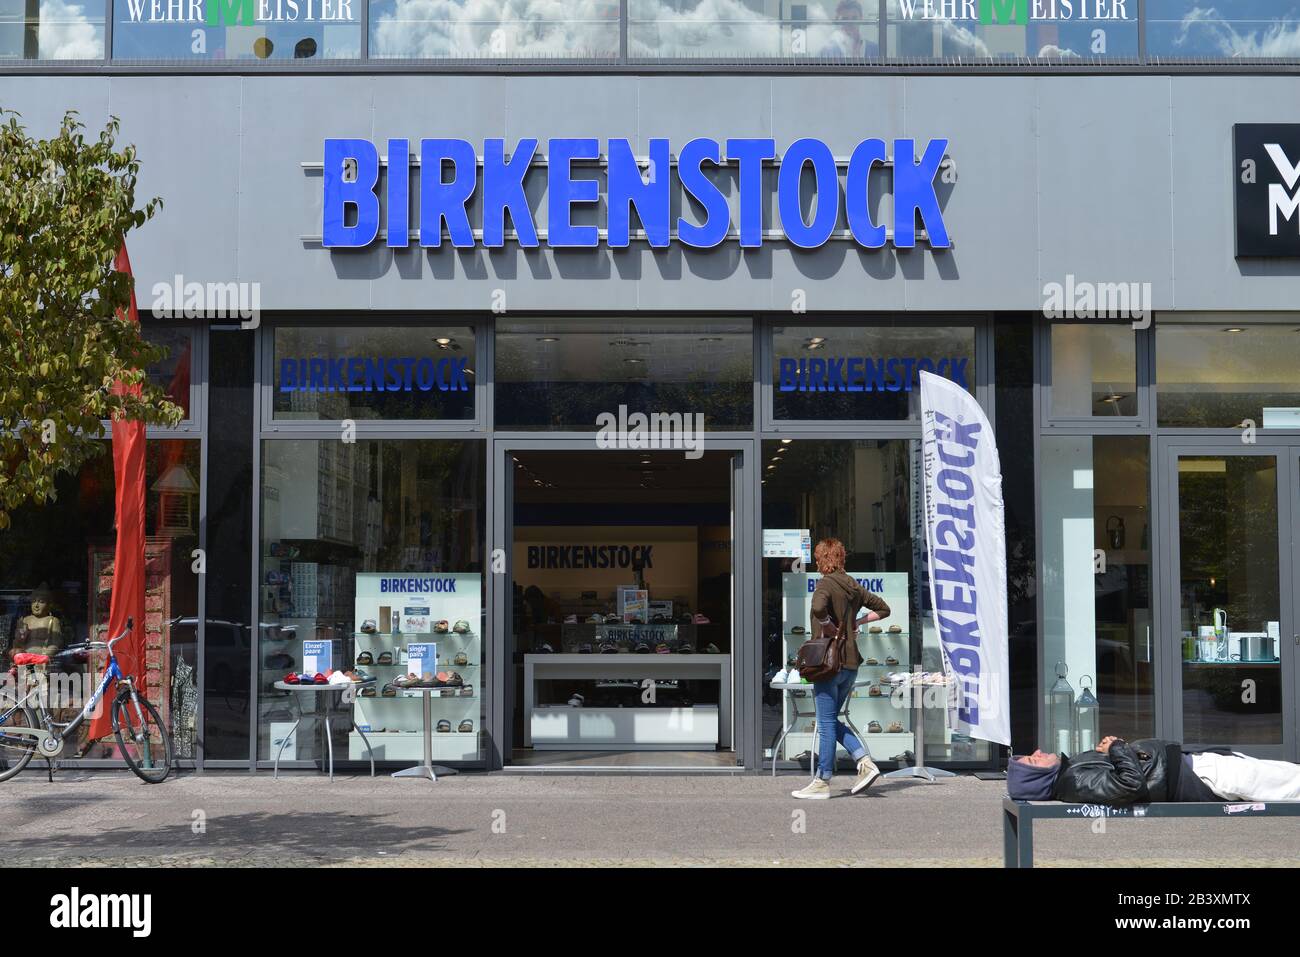 Birkenstock Geschaeft, Karl-Liebknecht-Straße, Mitte, Berlin, Deutschland  Stockfotografie - Alamy